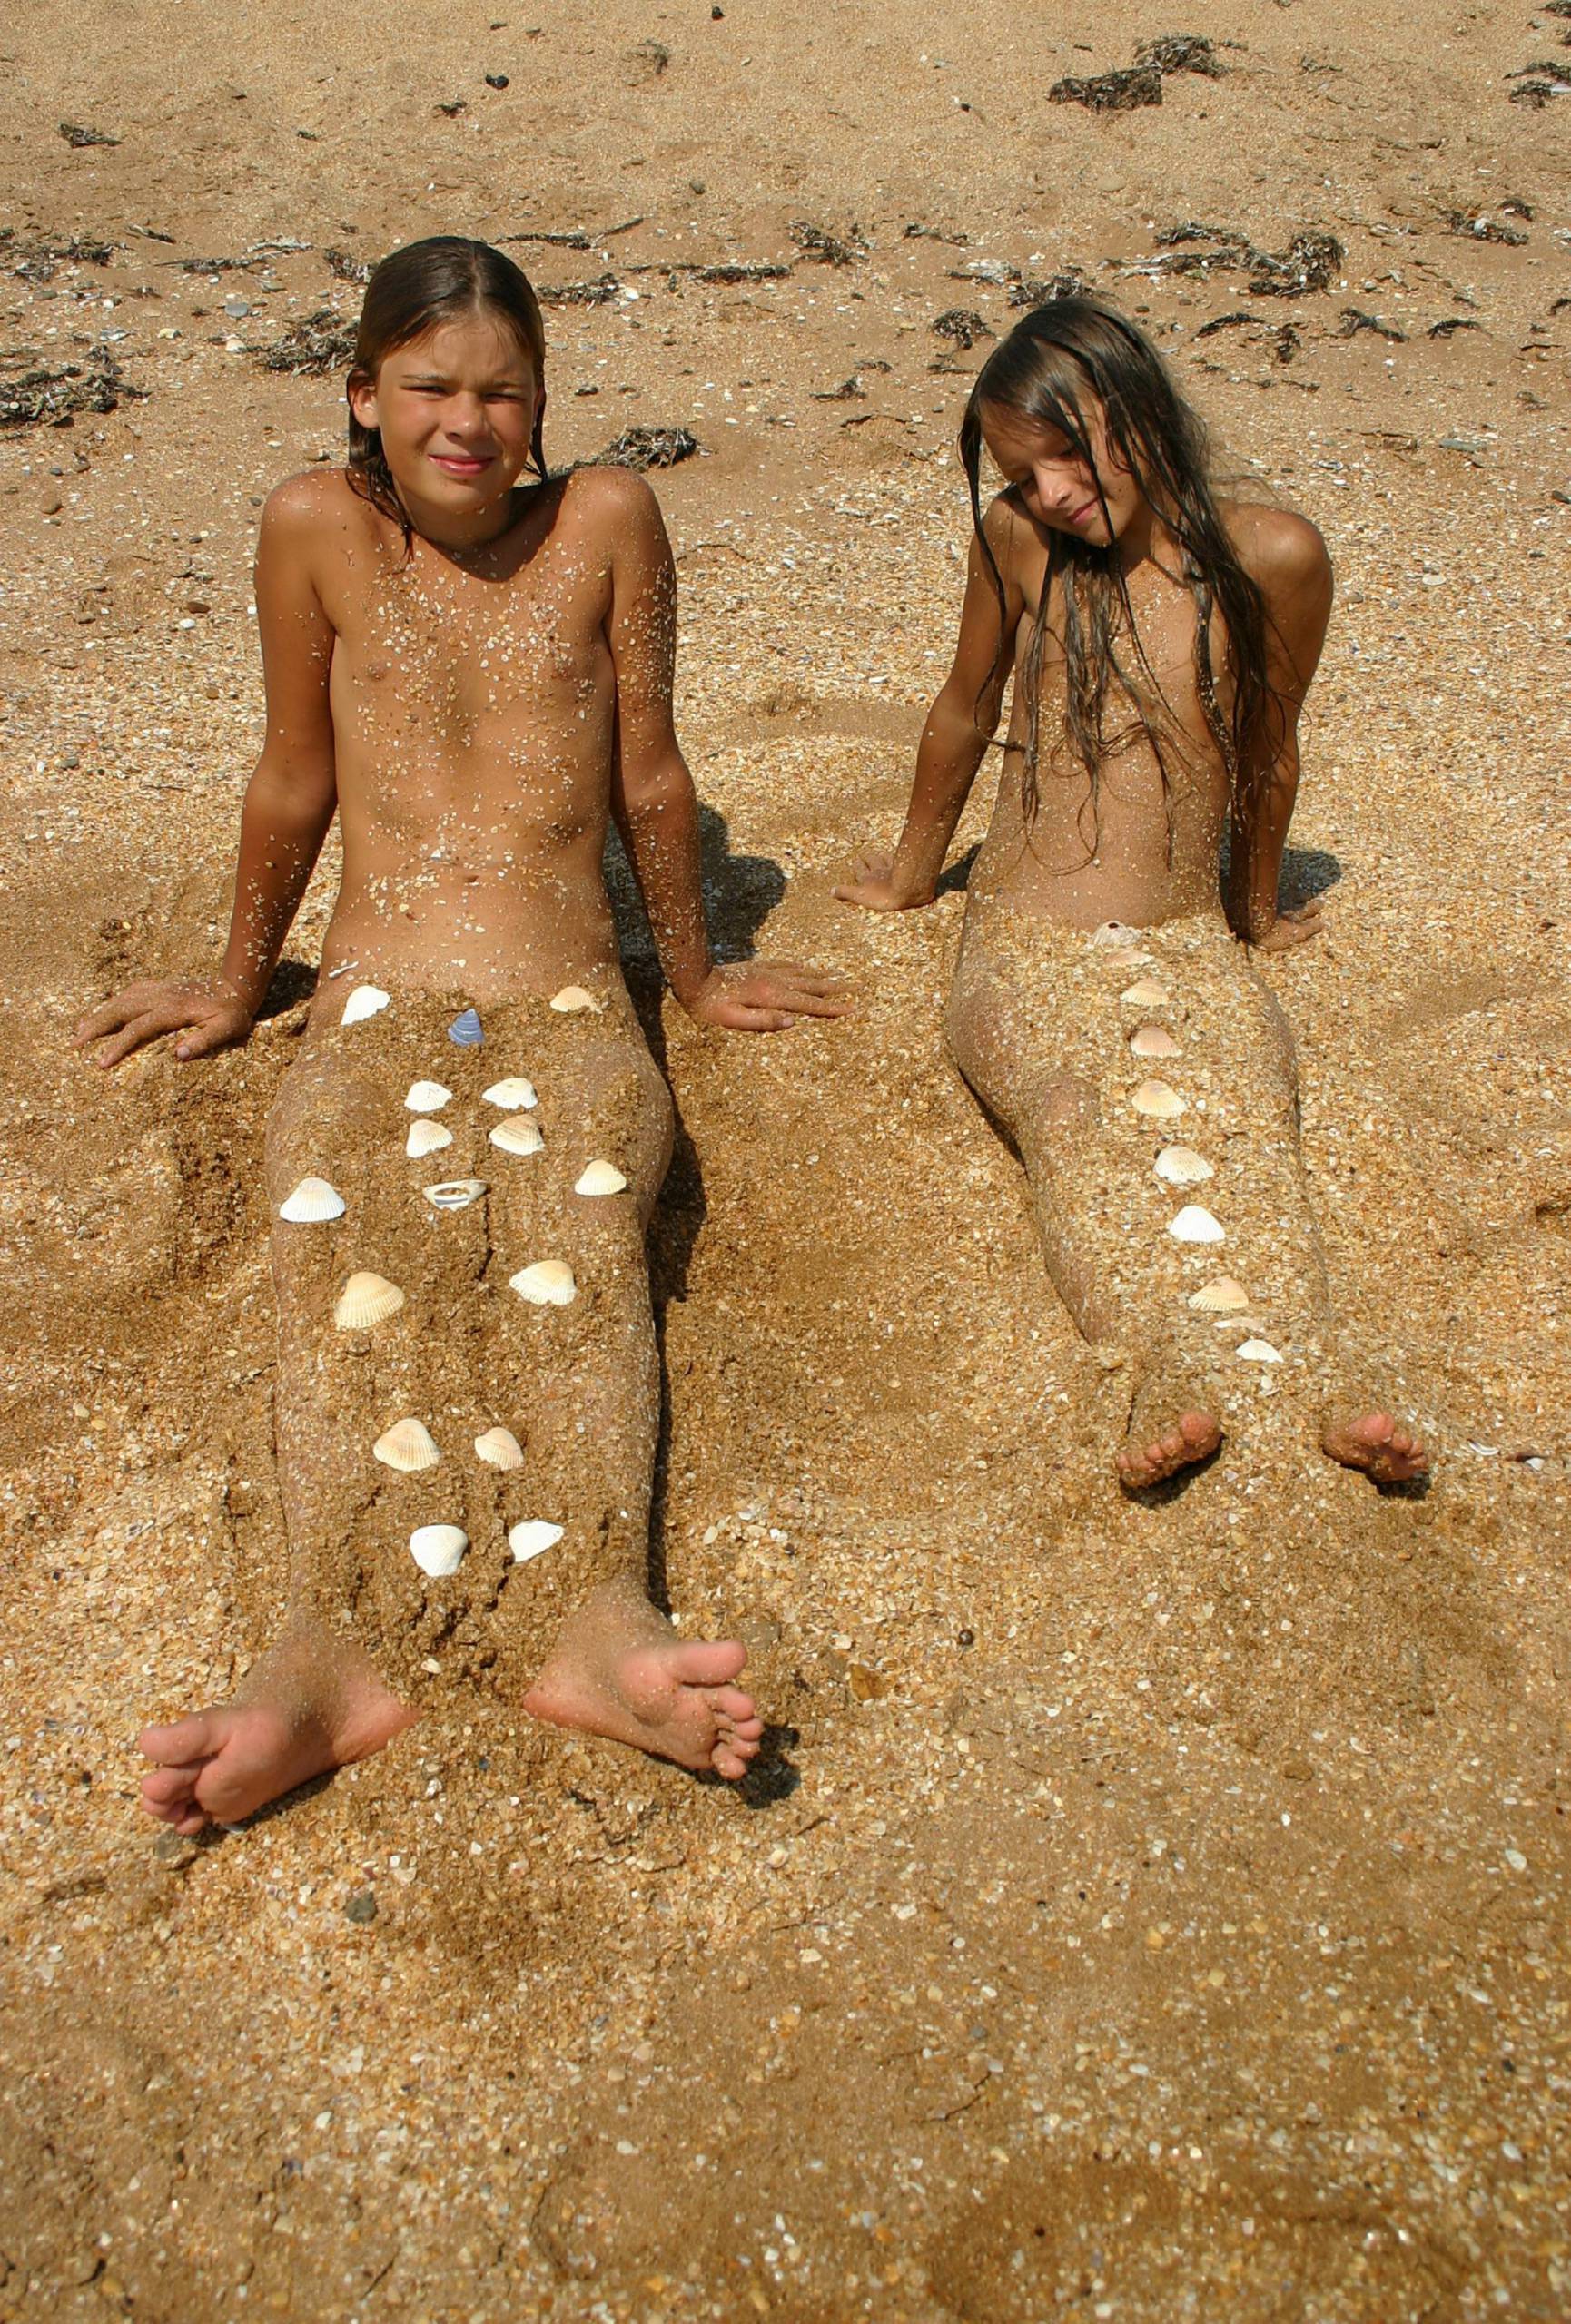 Nudist Pictures Beachside Sandy Mermaid - 2